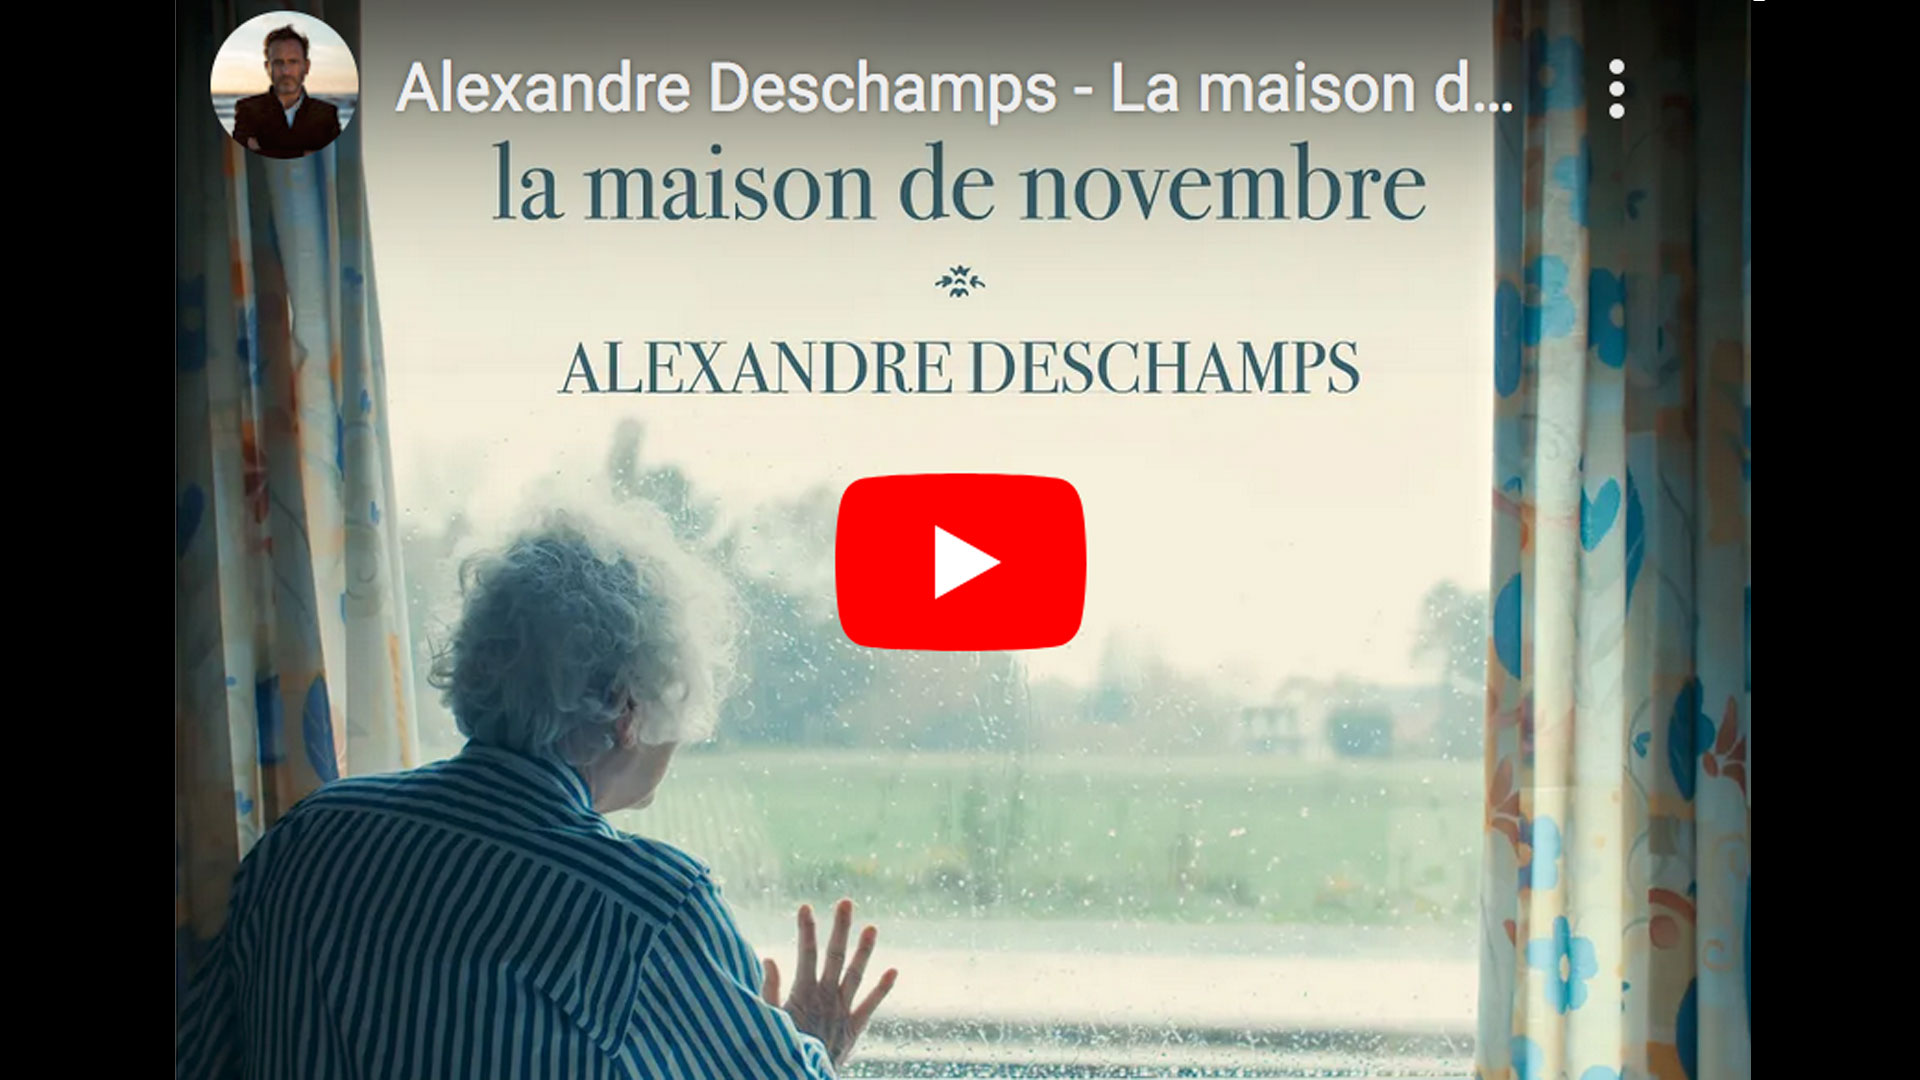 Clip : “La maison de novembre“ - Alexandre Deschamps